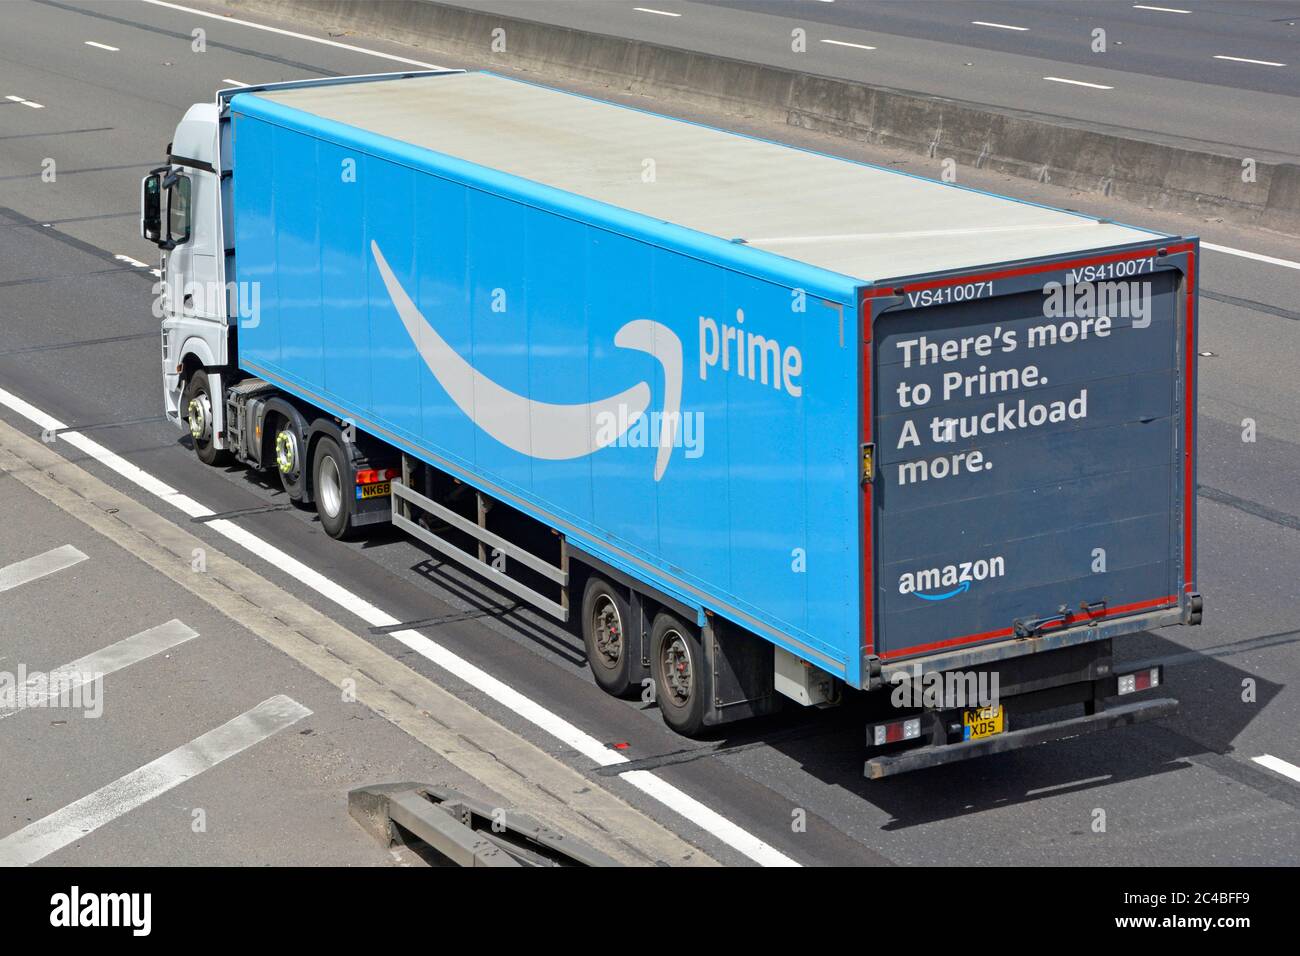 Vista aérea lateral y trasera de camión blanco azul cadena de suministro  Amazon remolque articulado con la publicidad en la puerta trasera de viaje  en la autopista del Reino Unido Fotografía de